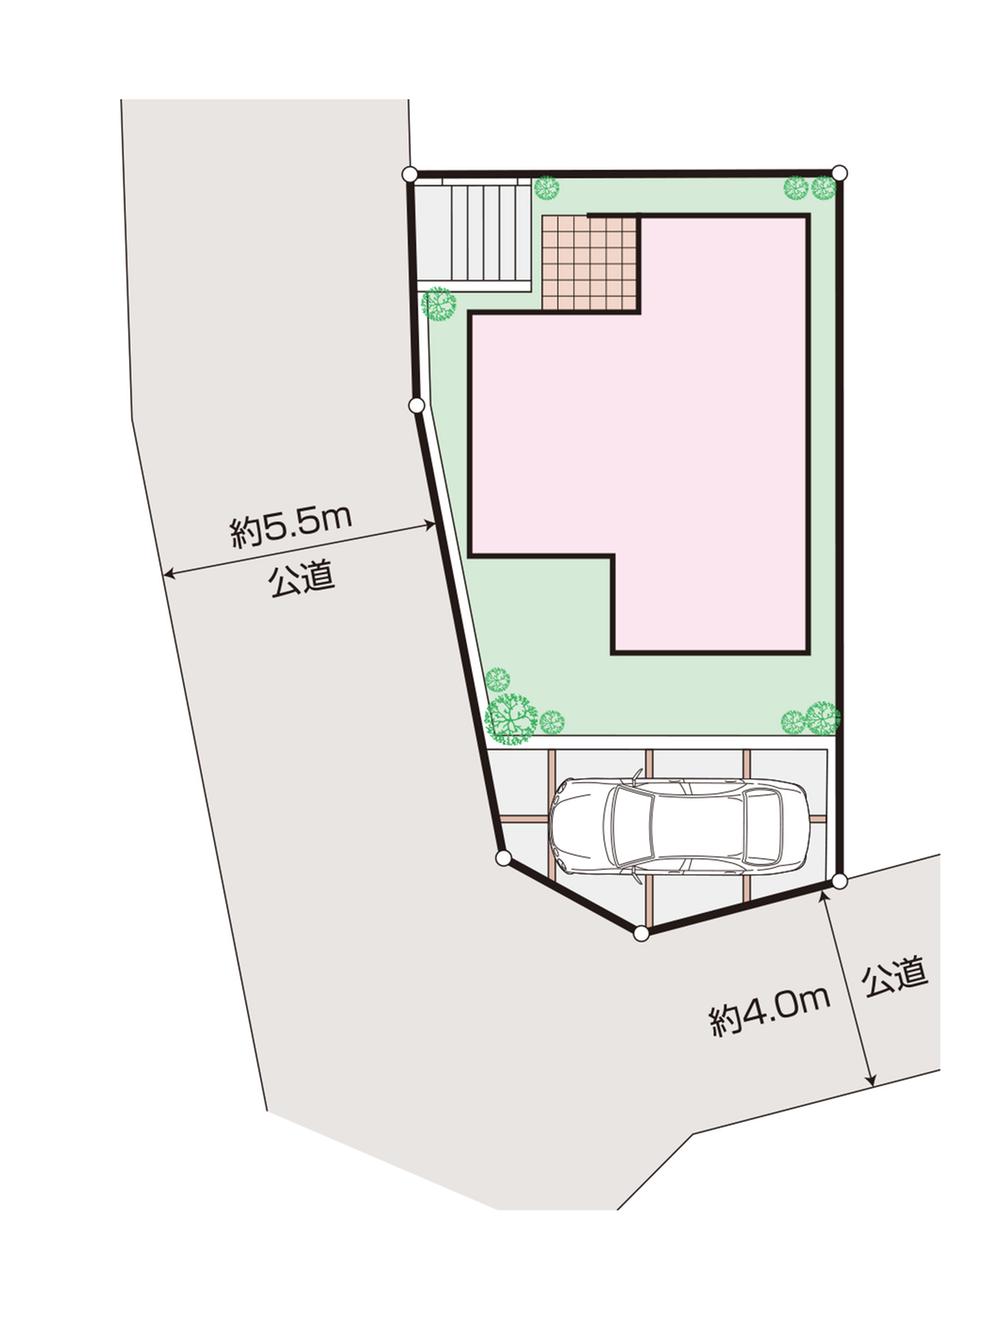 Compartment figure. 36,800,000 yen, 3LDK, Land area 100.01 sq m , Building area 80 sq m